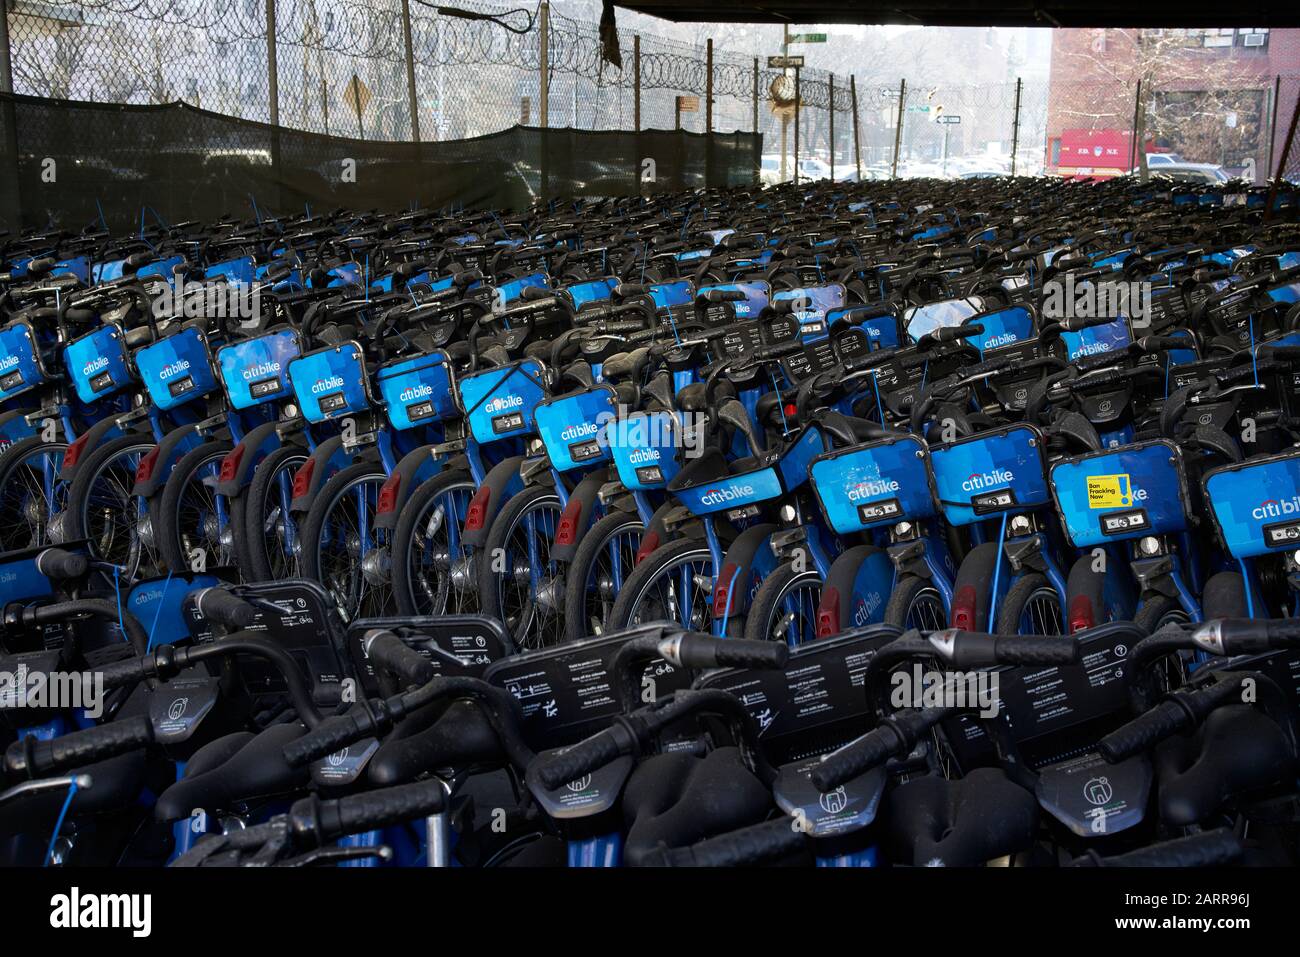 Citibike bicycles for bike sharing stored during New York's winter low biking season. Stock Photo